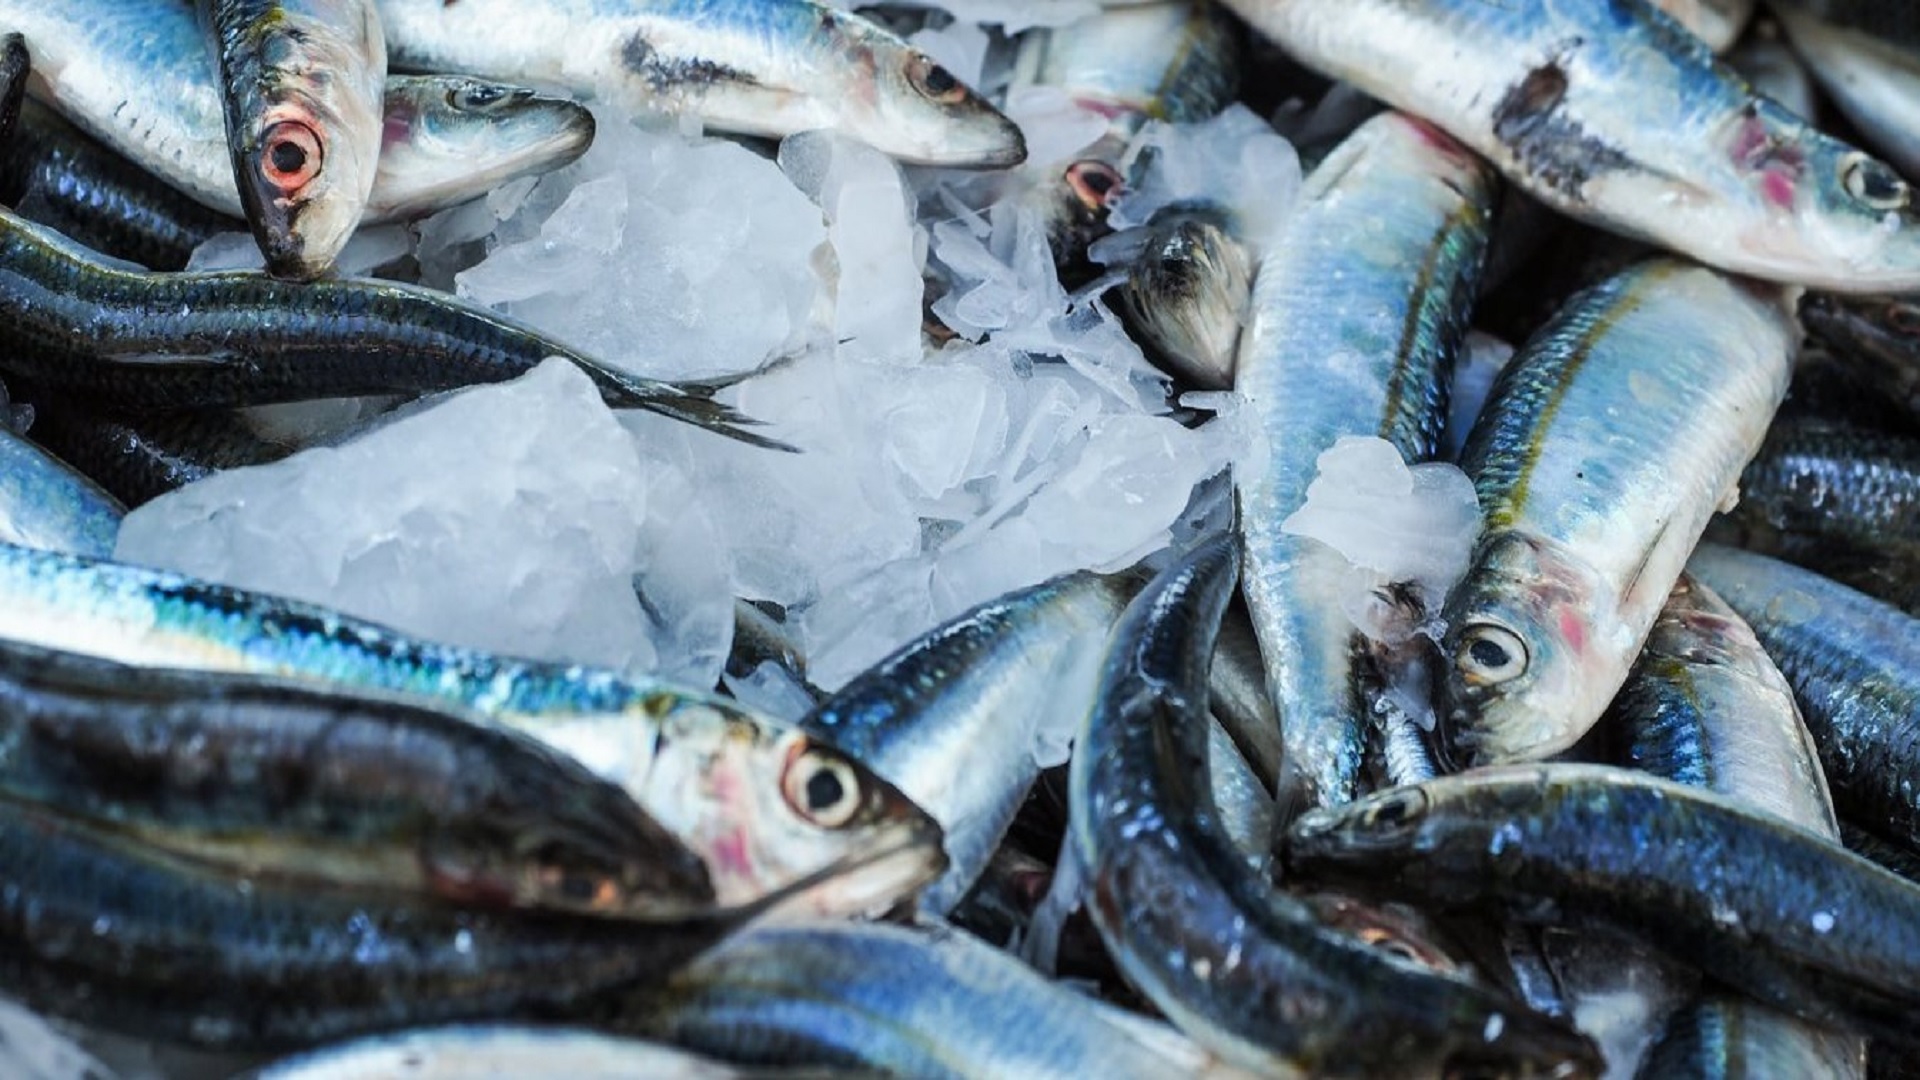 Κάθε πότε και γιατί θα πρέπει να καταναλώνουμε ψάρι